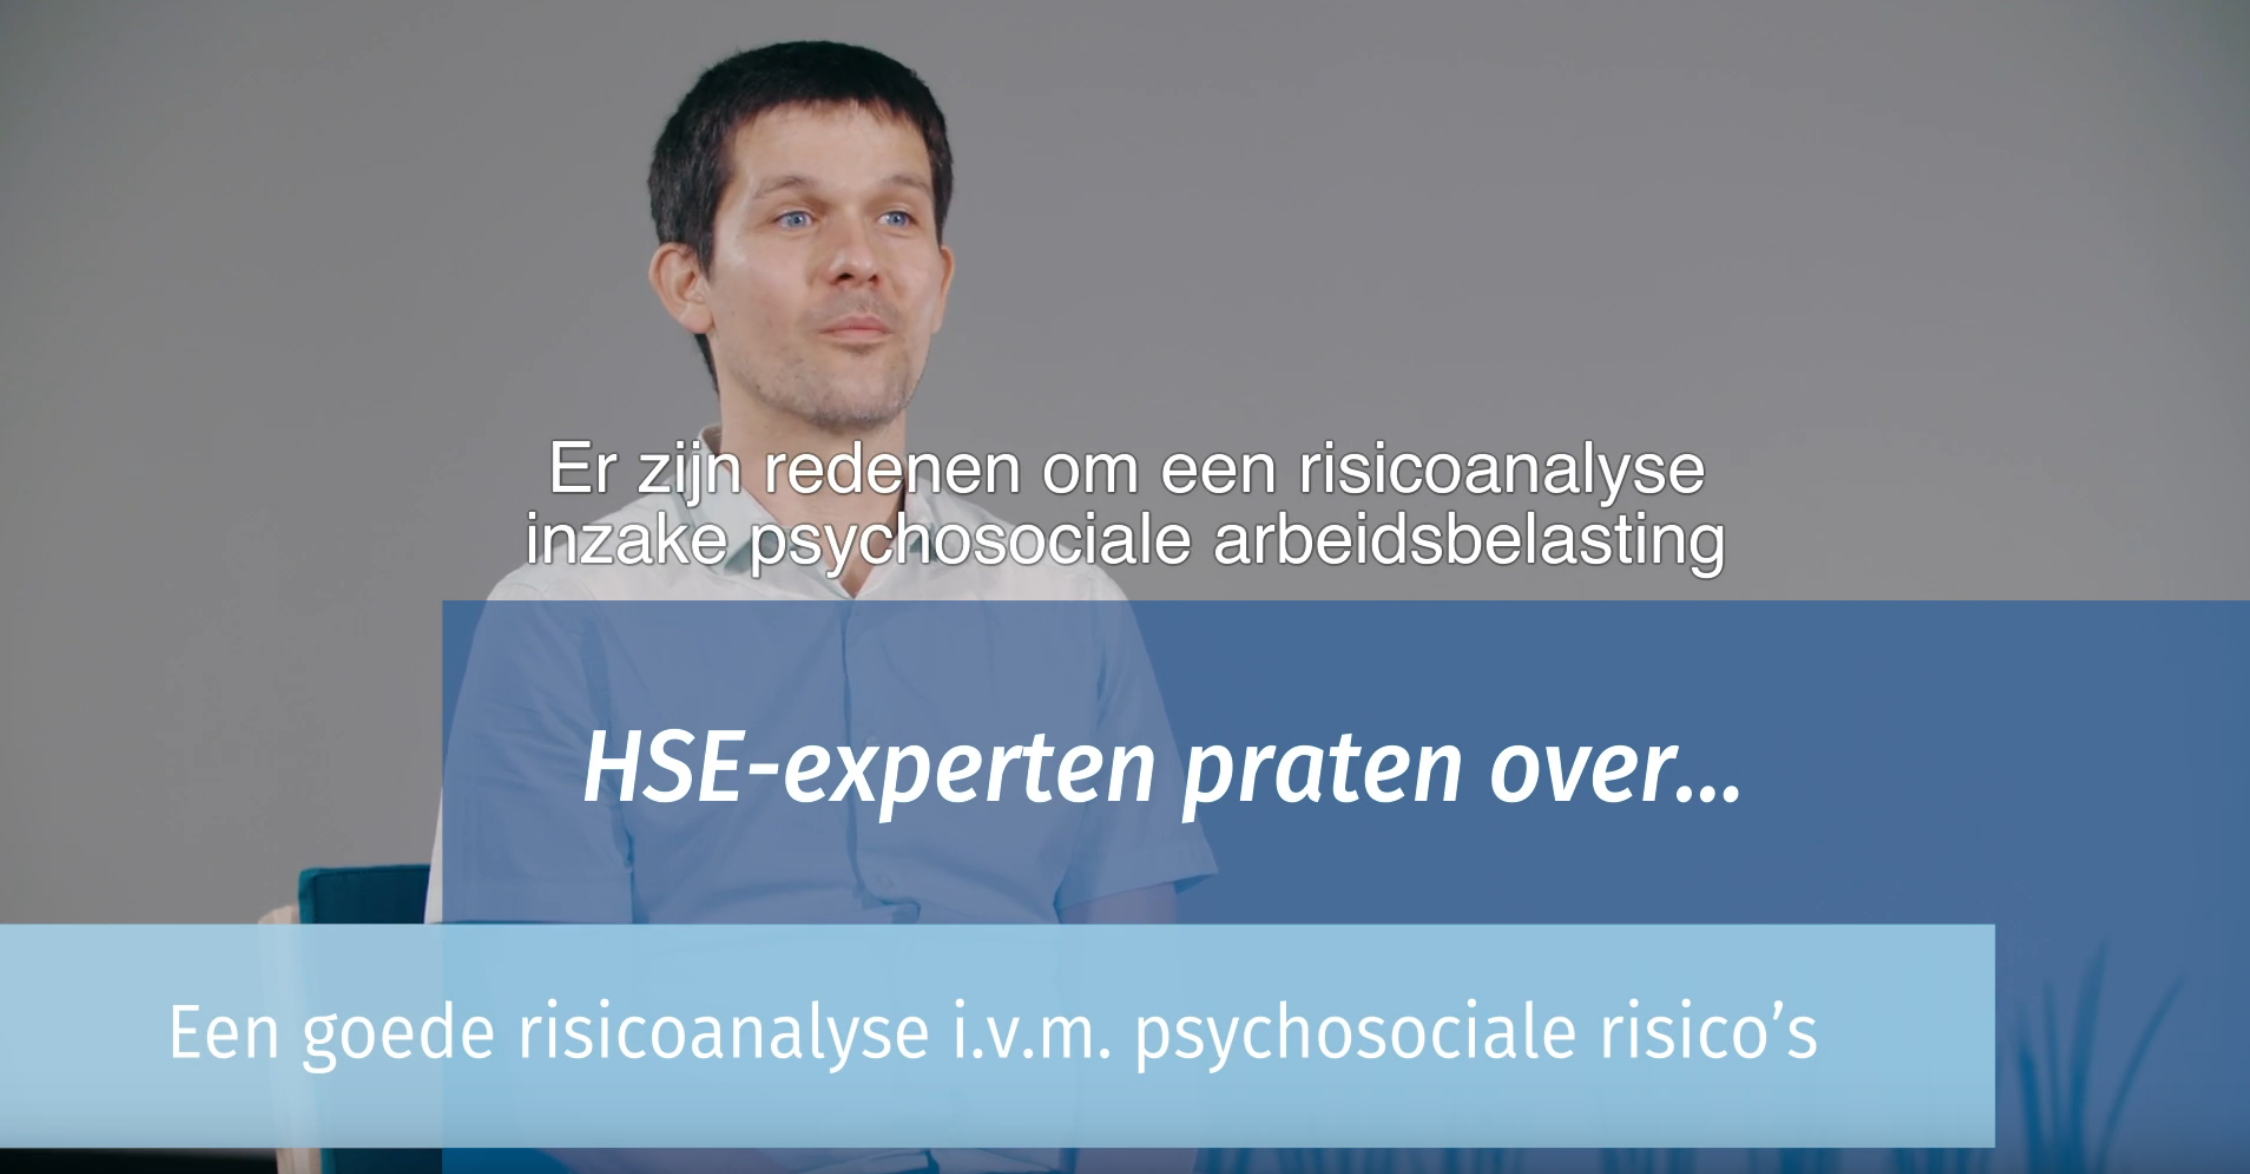 Stijn Indenhoek spreekt over een goede risicoanalyse i.v.m. psychosociale risico's